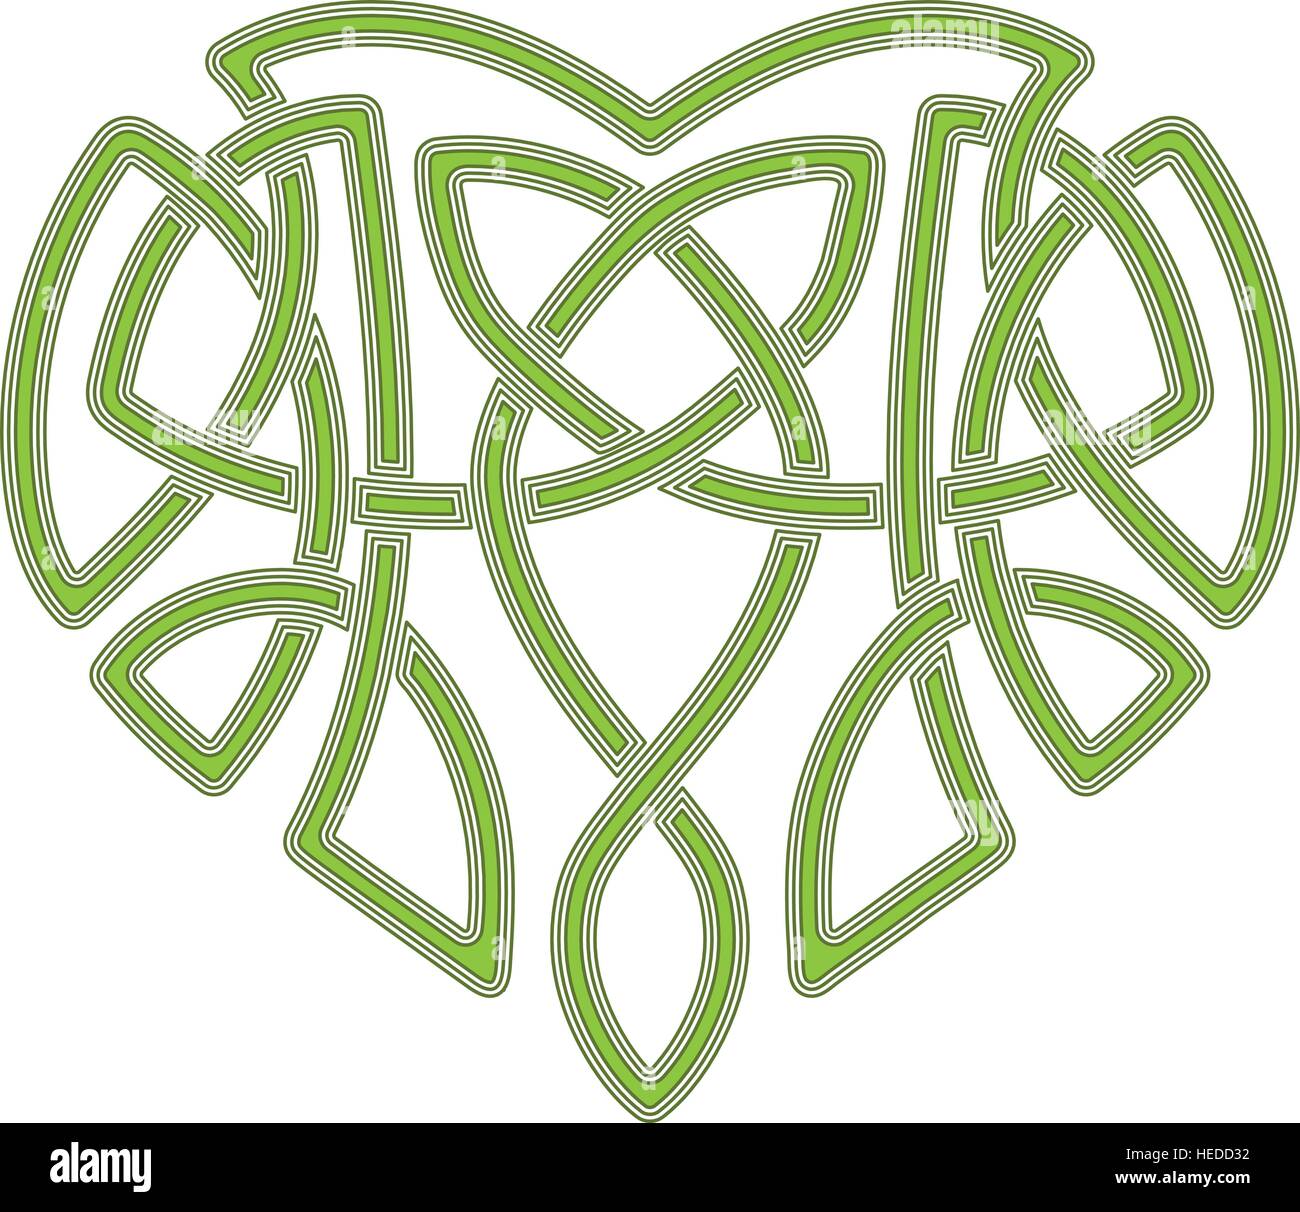 Keltische Herz, verflechten sich ethnische Symbol Knoten Stock Vektor